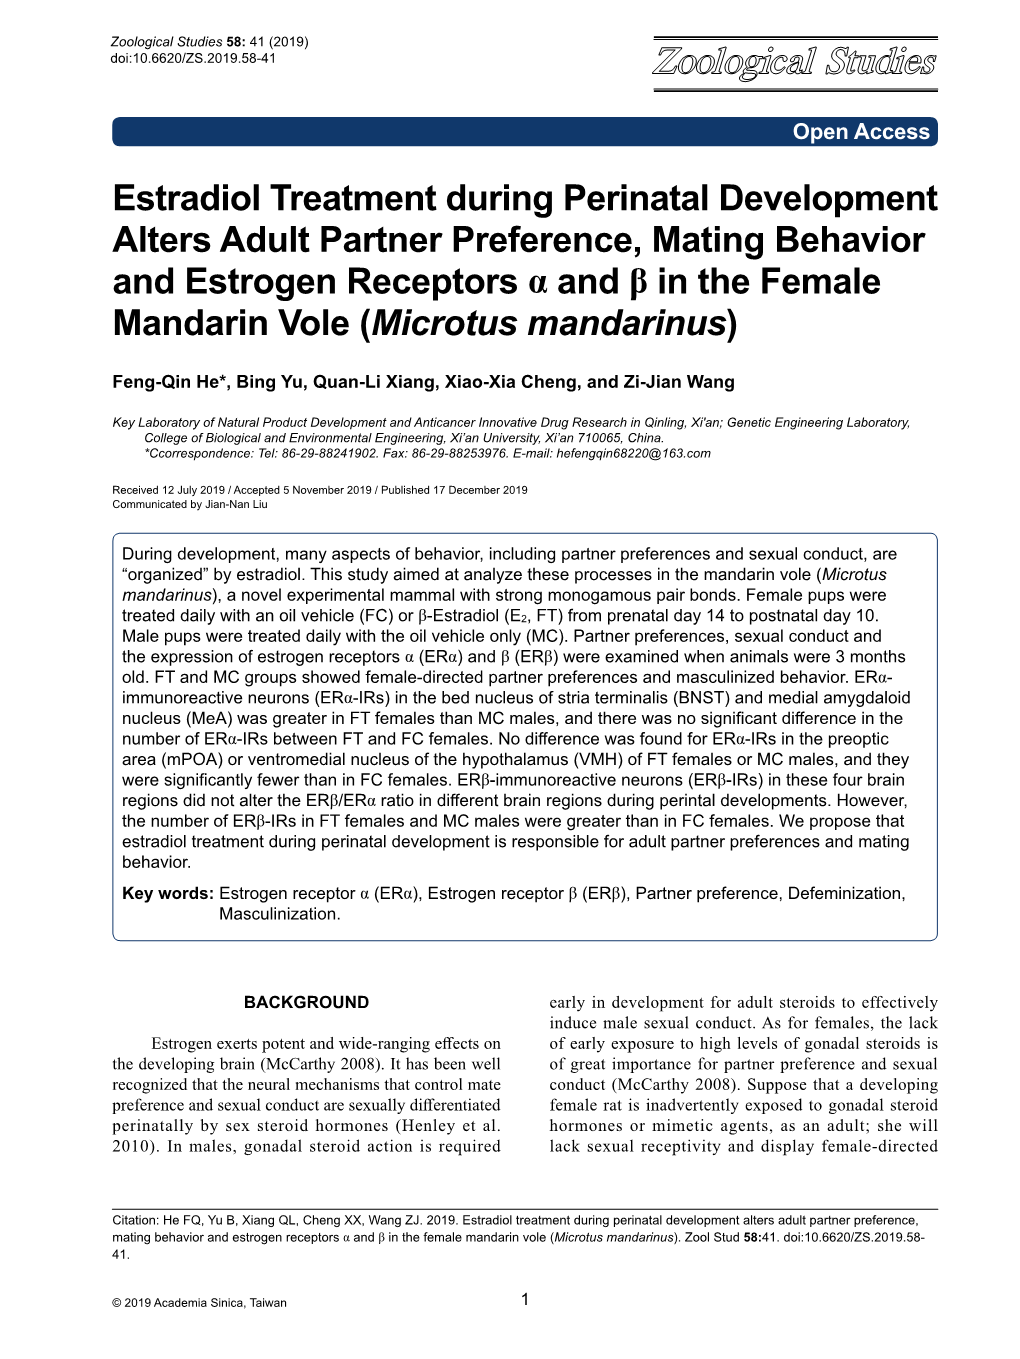 Estradiol Treatment During Perinatal Development Alters Adult Partner